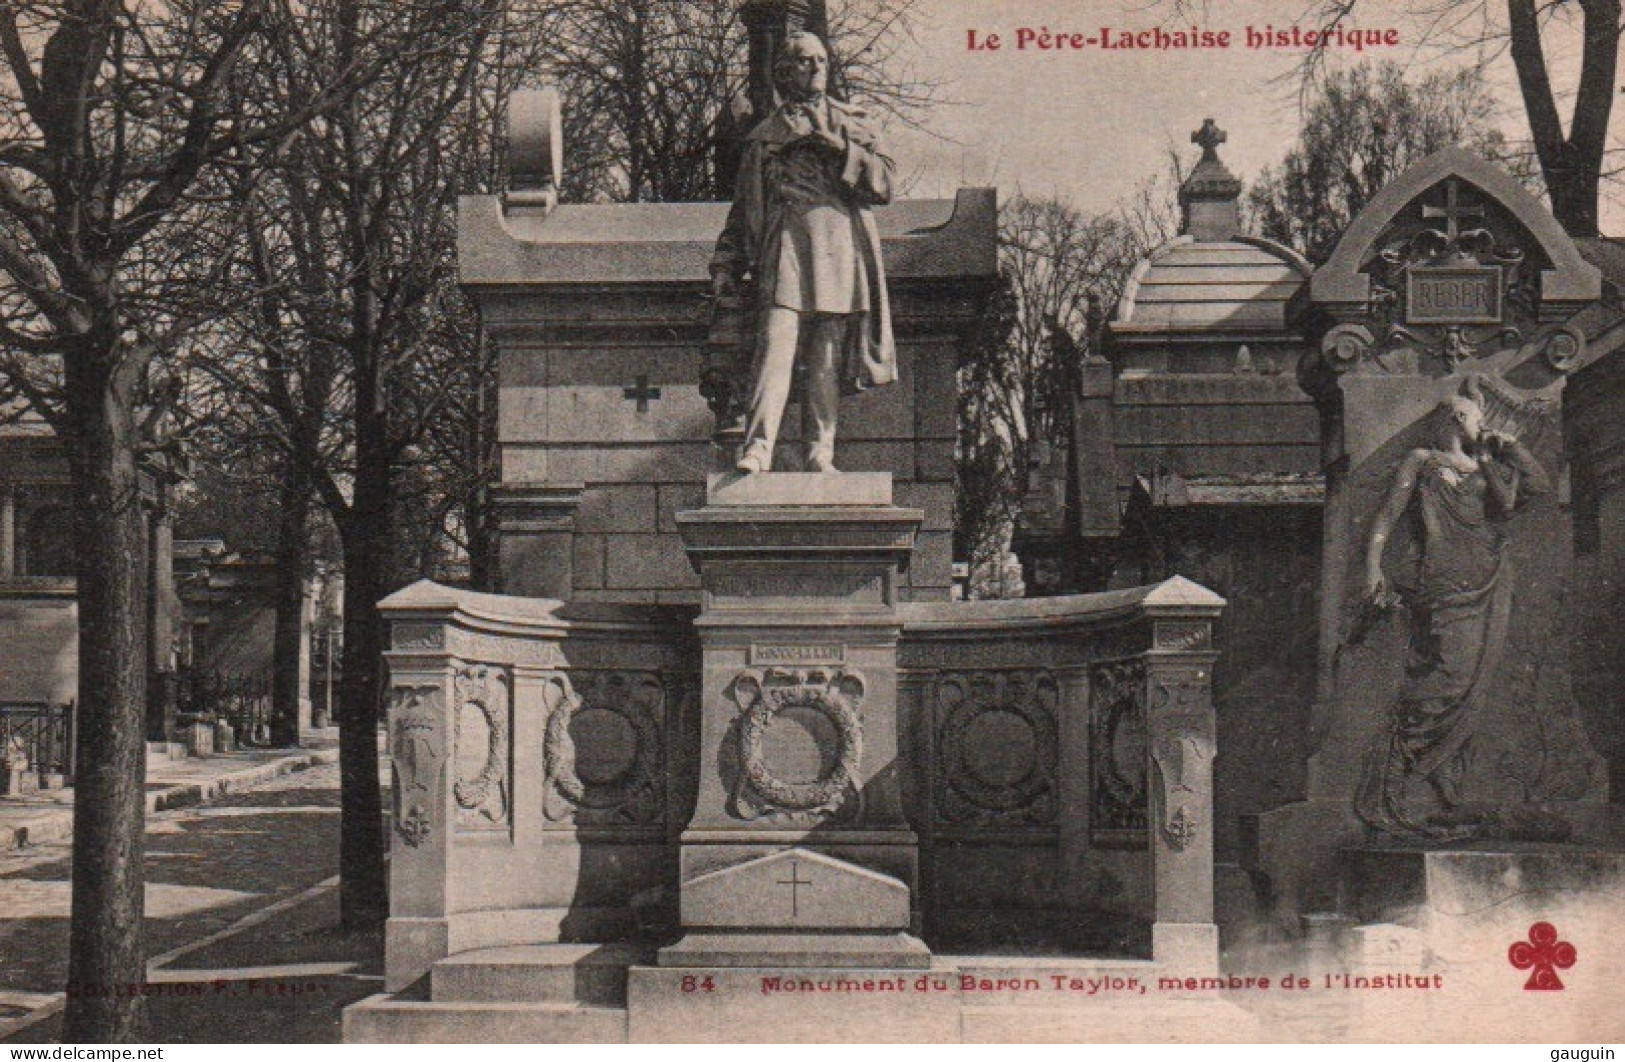 CPA - PARIS - Cimetière PÈRE-LACHAISE - Monument De Baron TAYLOR Membre De L'Institut - Edition C.C.C.C - Standbeelden